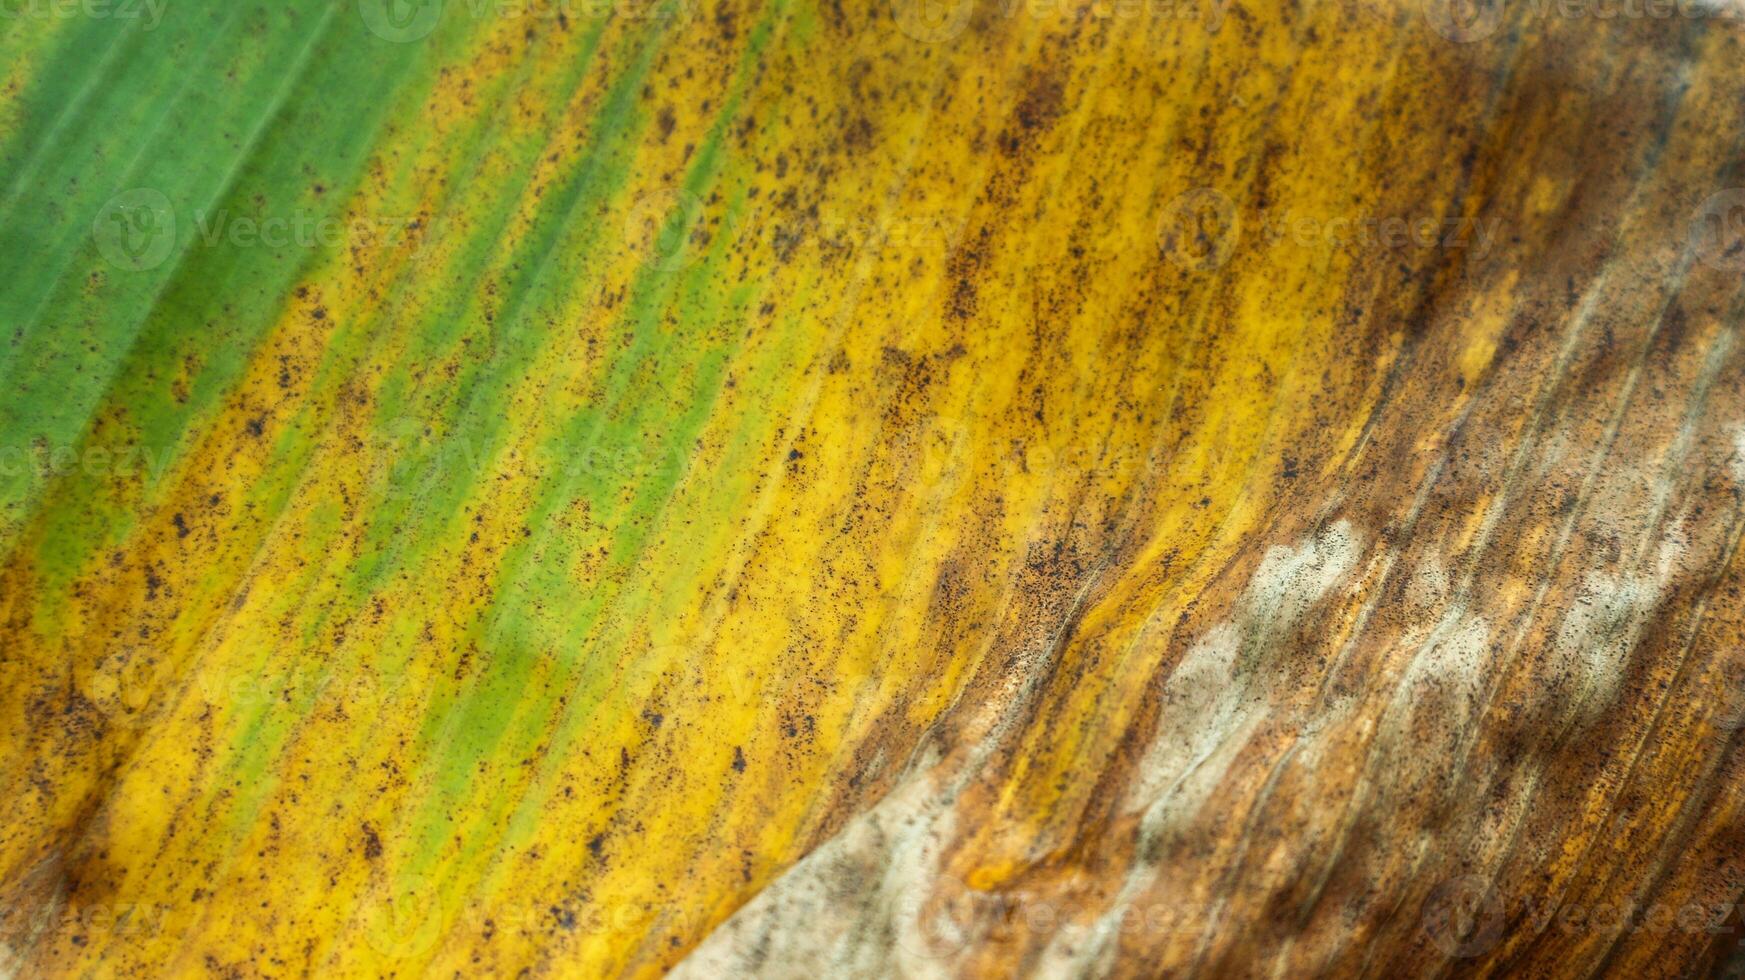 el textura de plátano hojas ese tener comenzado a giro amarillo y seco. foto